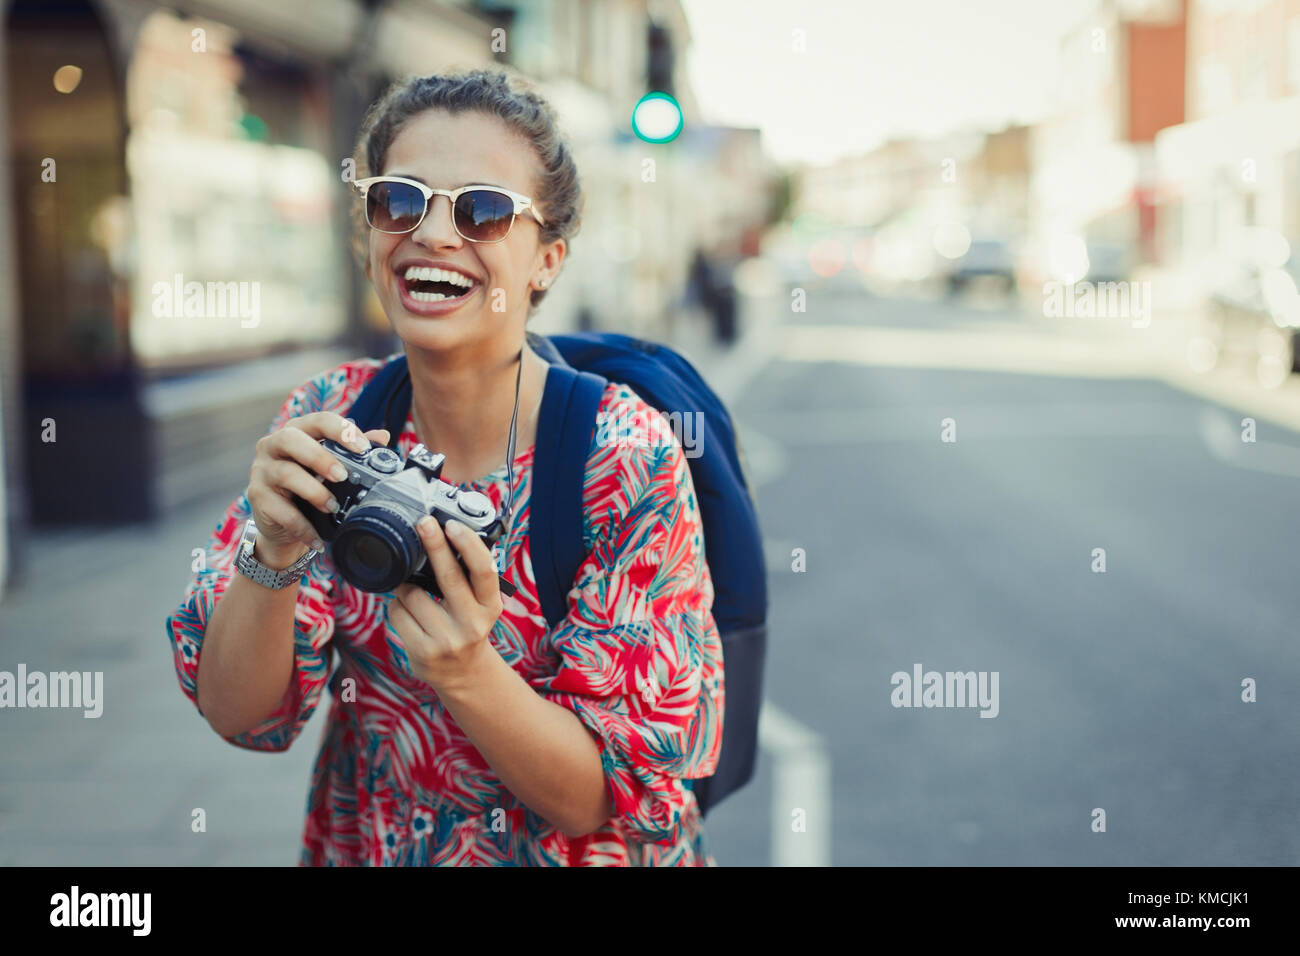 Ritratto ridendo, entusiasta giovane turista in occhiali da sole fotografando con la macchina fotografica su strada urbana Foto Stock